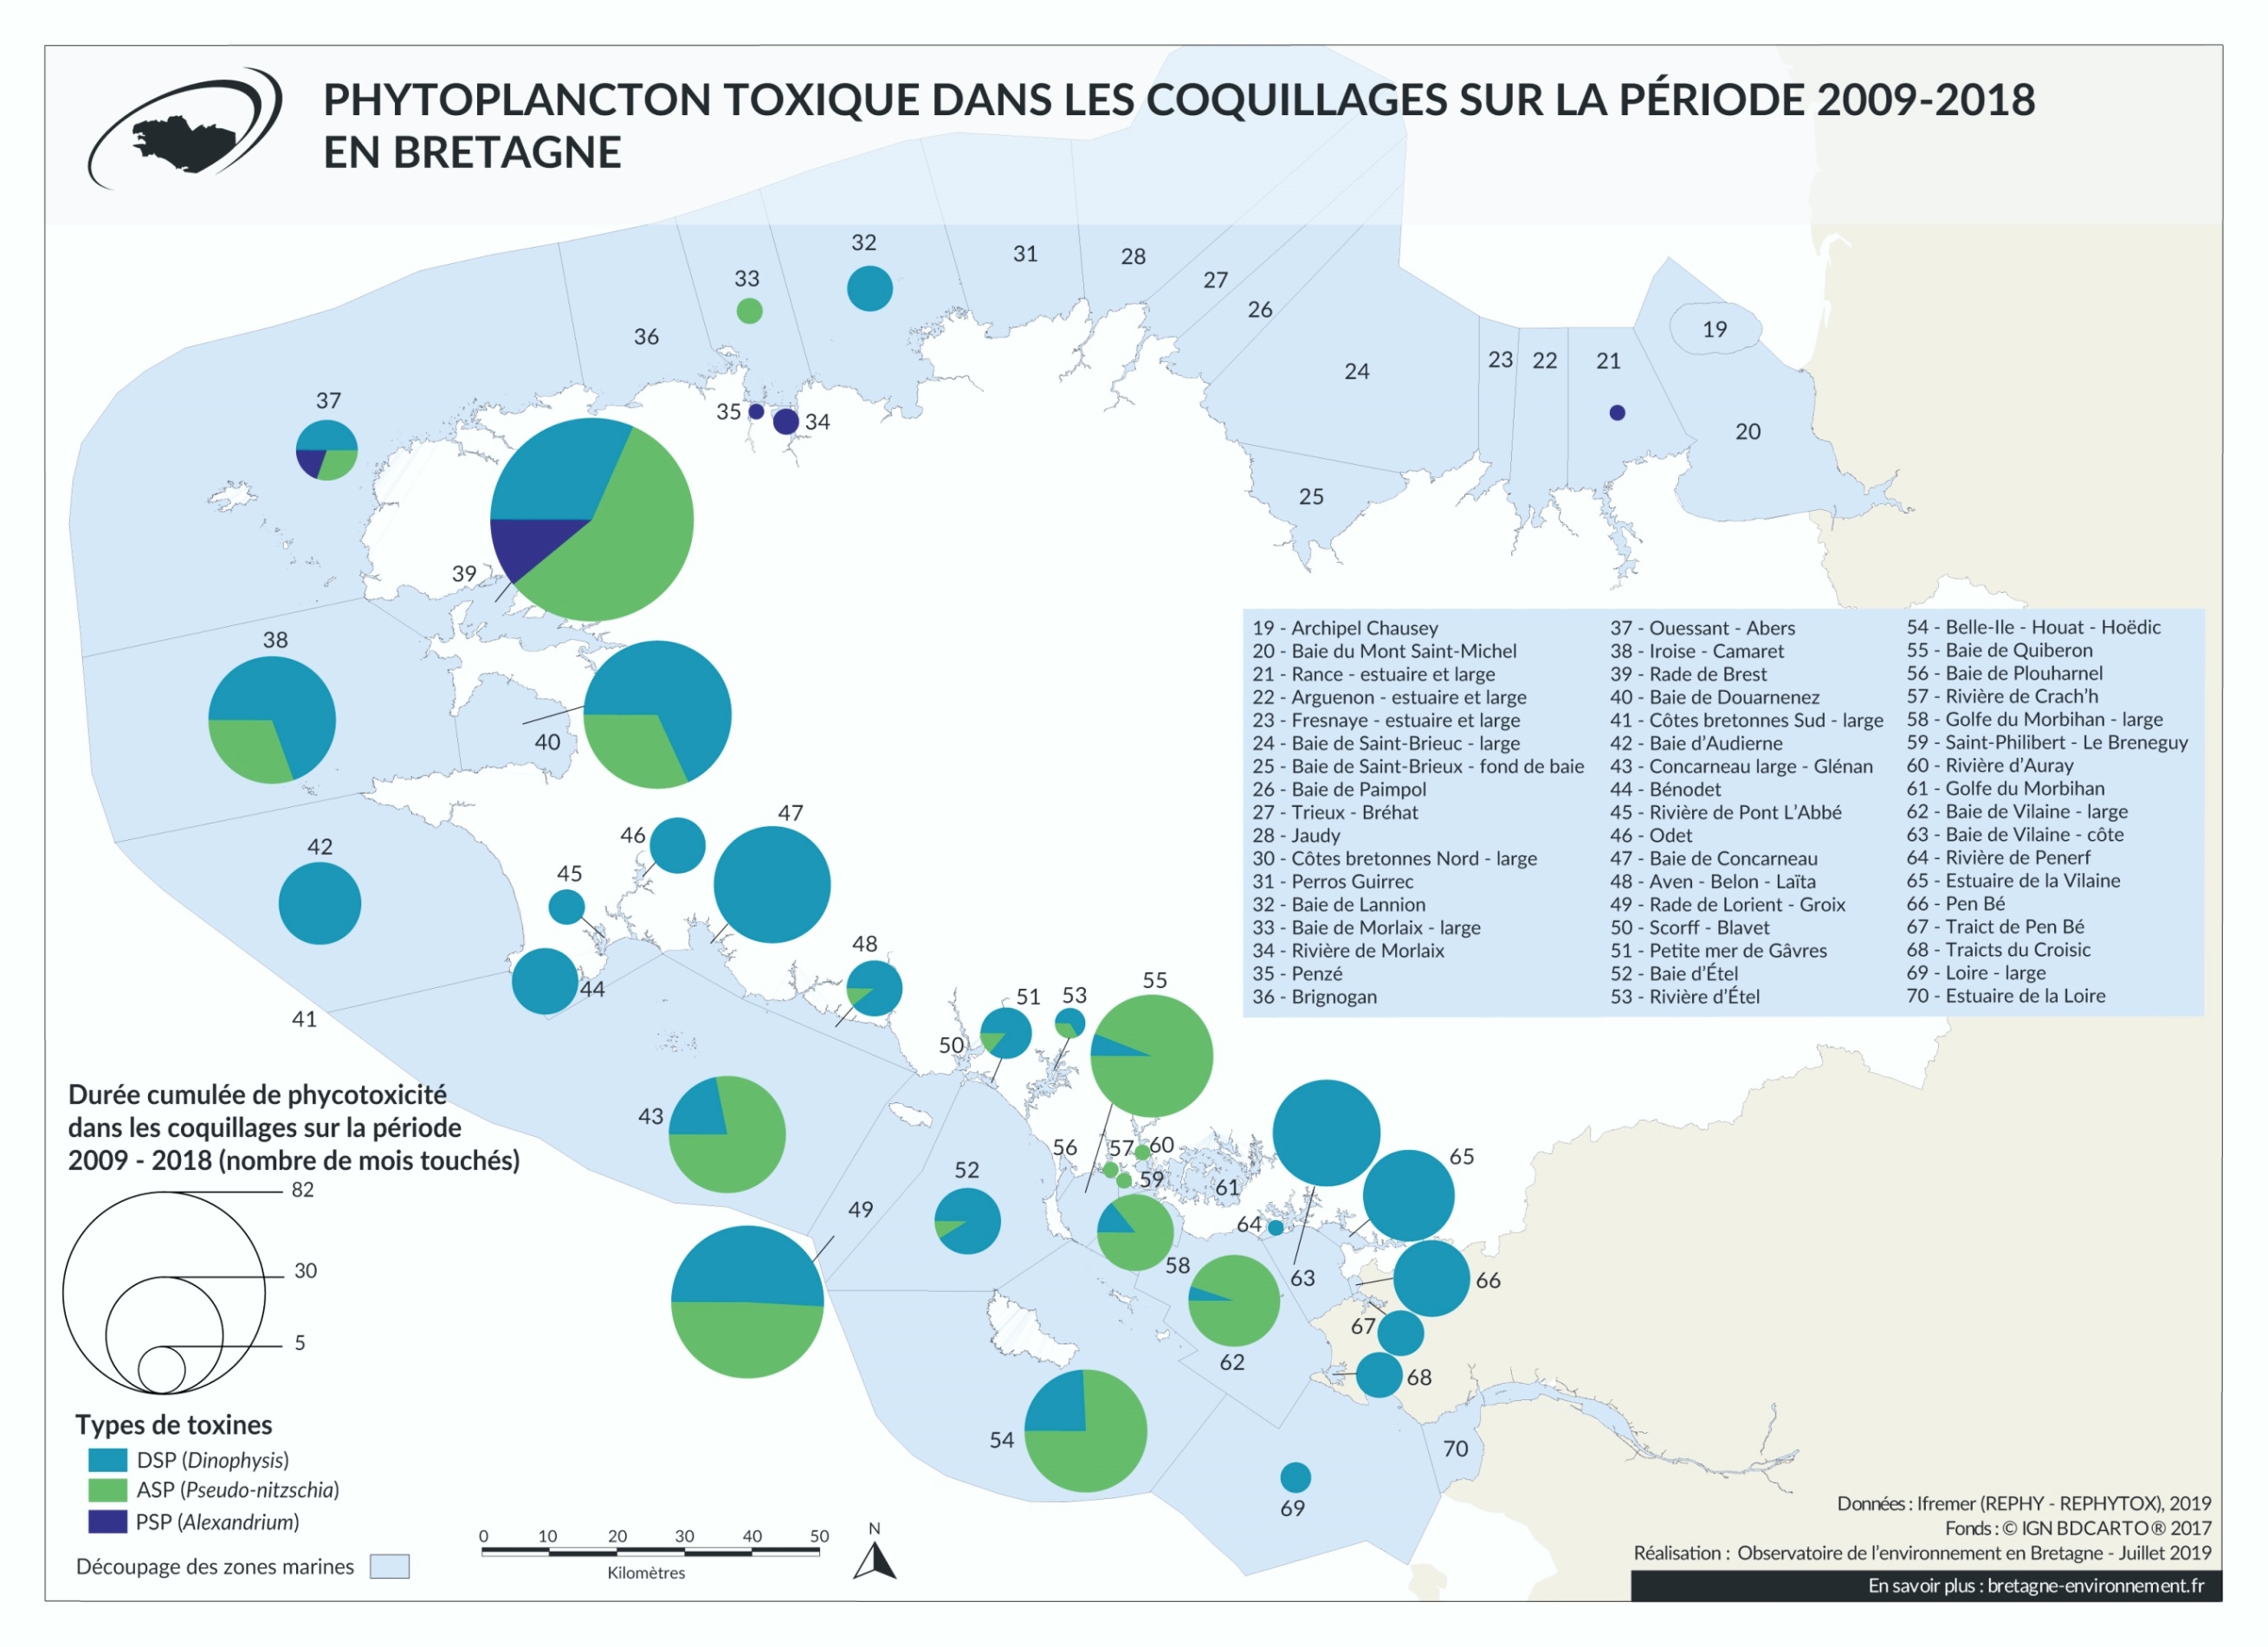 Phytoplancton toxique dans les coquillages sur la période 2009 - 2018